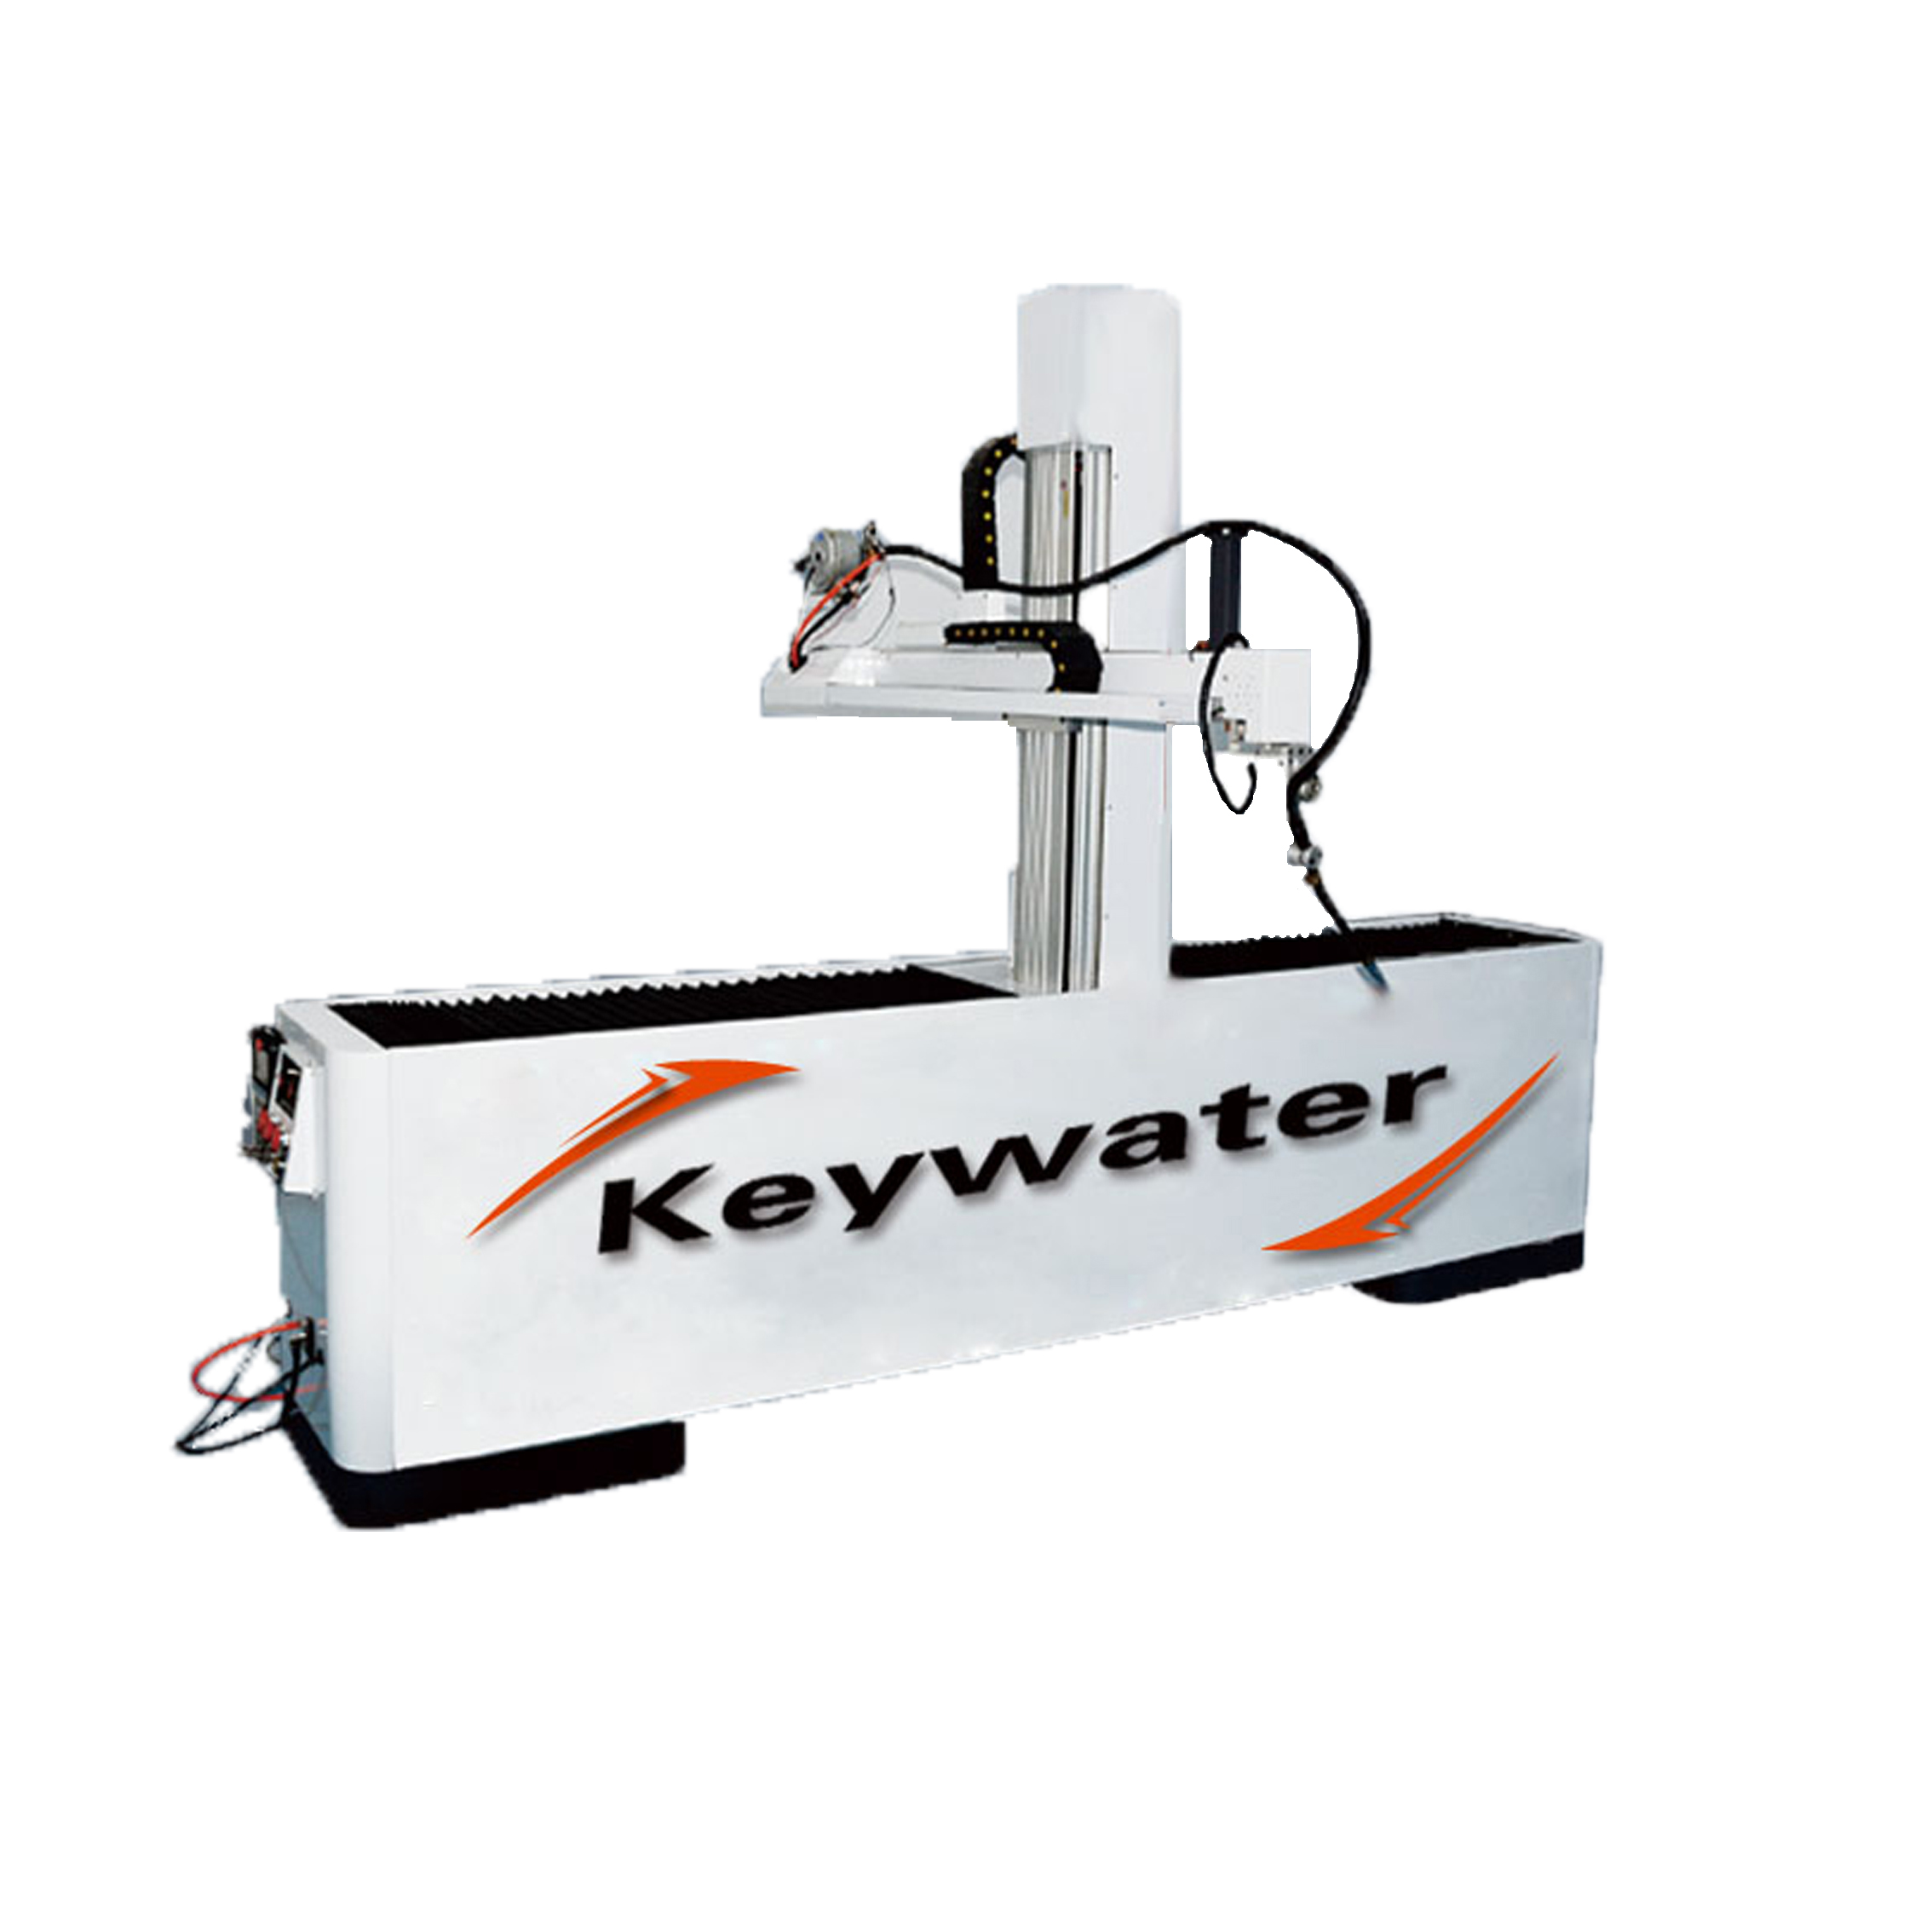 凯沃智造	自动焊接设备	自动焊接机器	直缝焊接机	机器人工业自动化